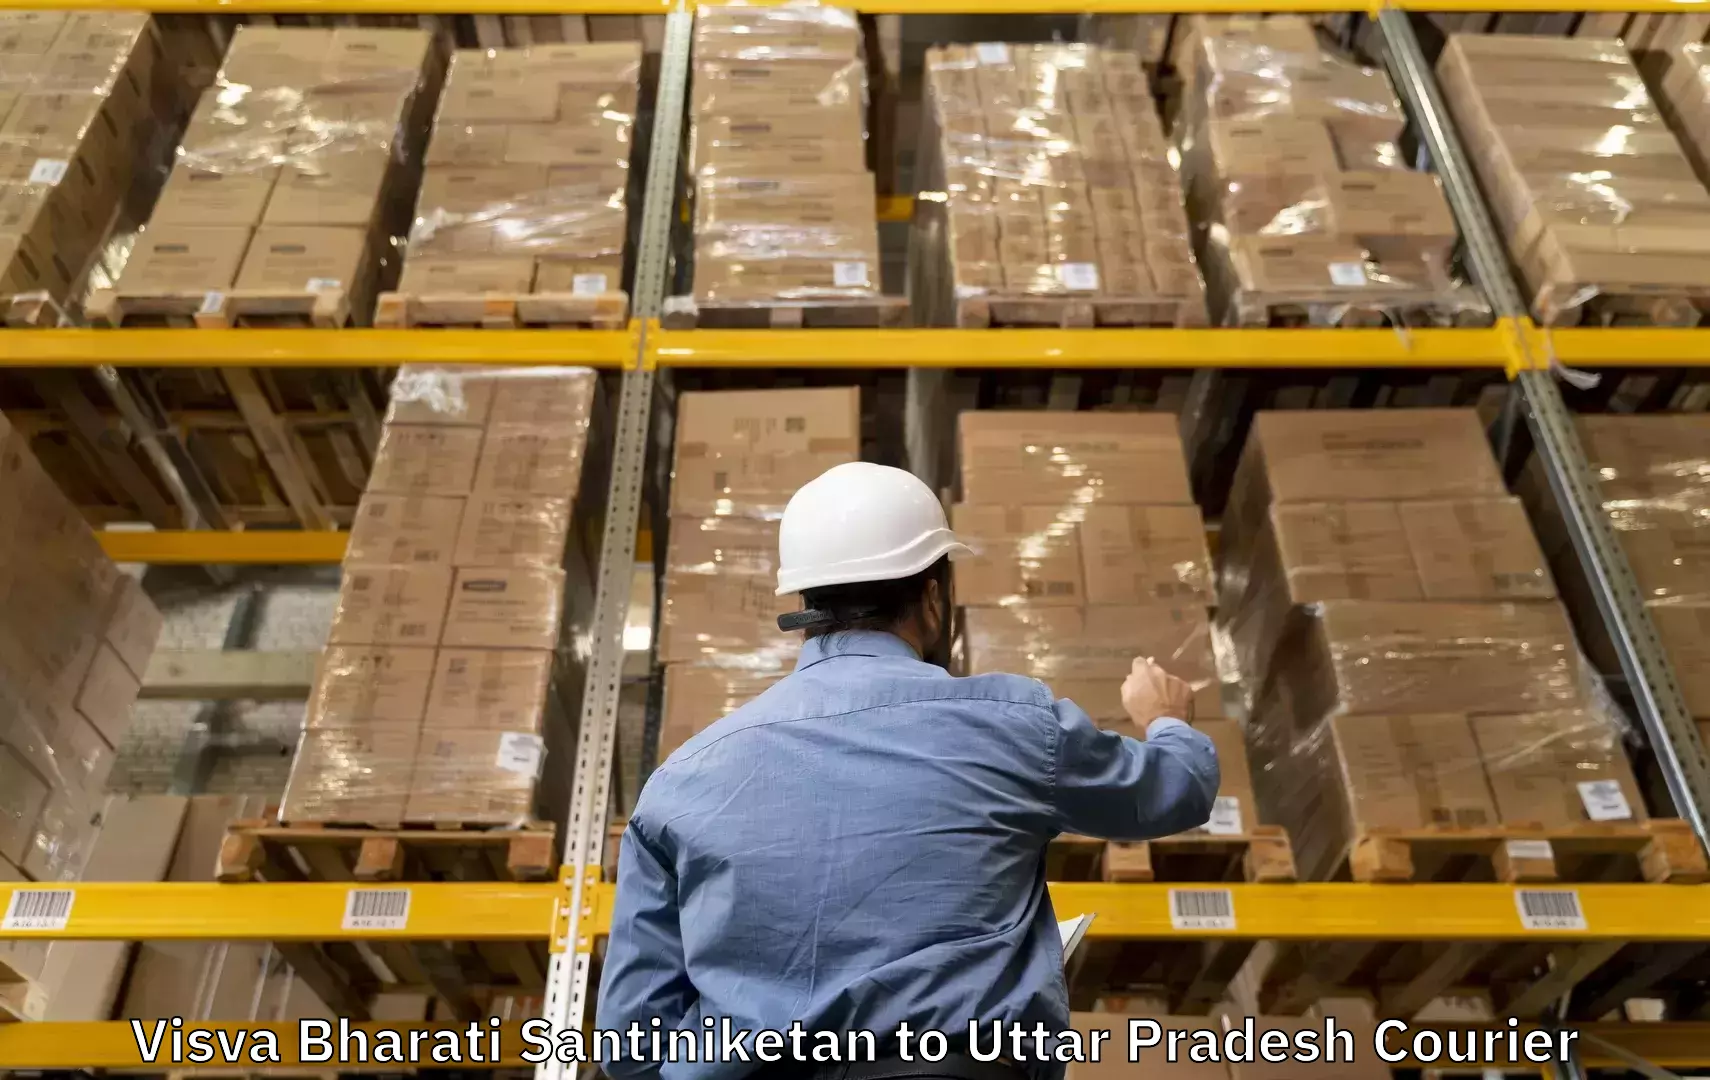 Baggage courier insights Visva Bharati Santiniketan to Ghosi